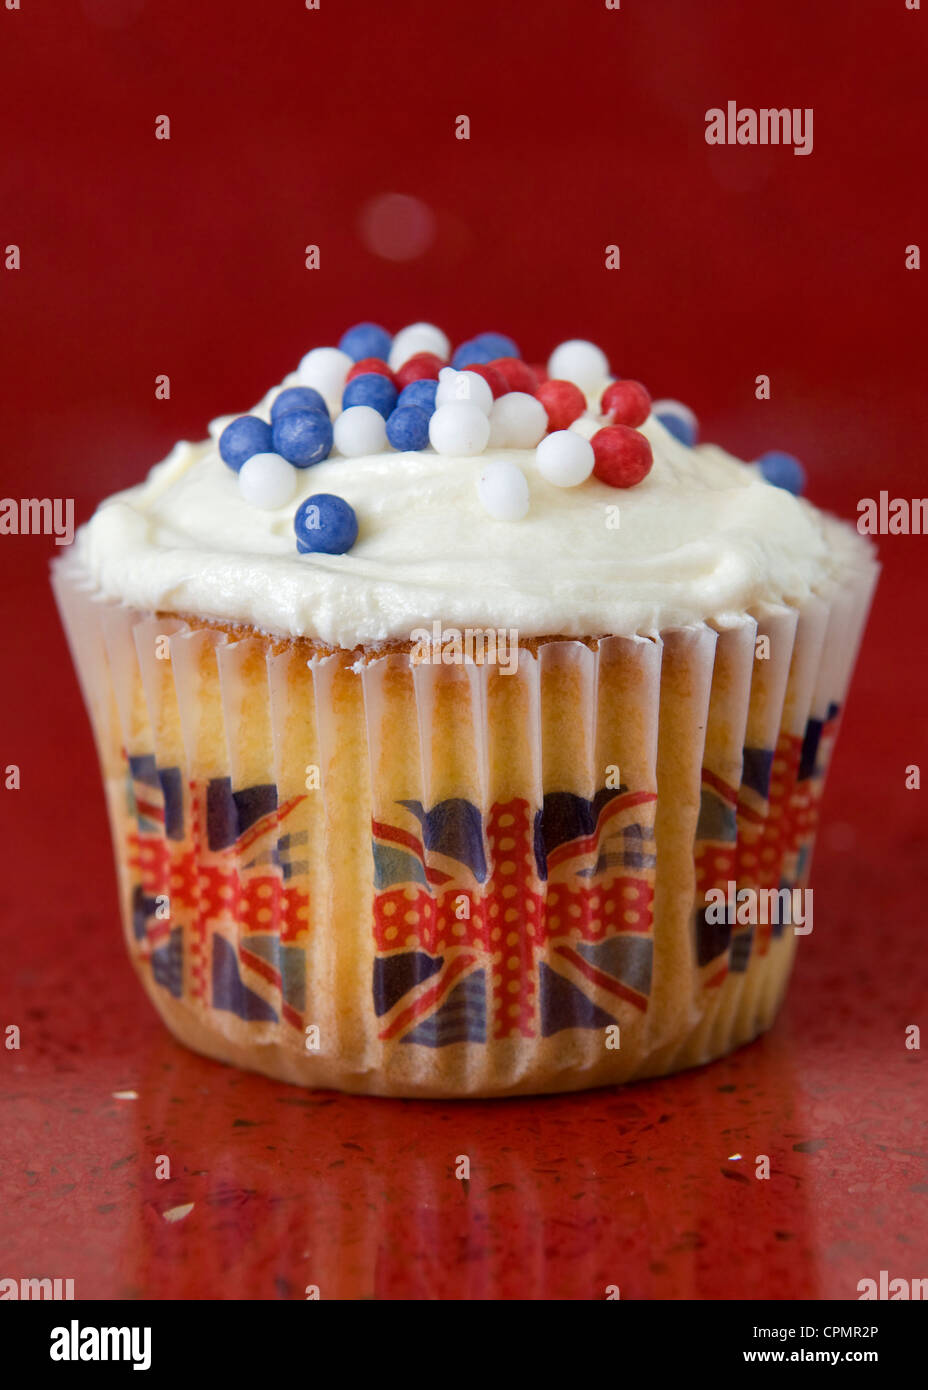 Chiếc bánh cupcake với hình dáng hình vuông, trang trí bởi những chiếc cờ Vương quốc Anh đầy màu sắc rực rỡ là món quà tuyệt vời nhất trong bất cứ dịp mừng nào. Tự hào khoe với bạn bè của mình về đặc sản này và chia sẻ niềm yêu quý và sự kiêu hãnh dành cho đất nước Vương quốc Anh.